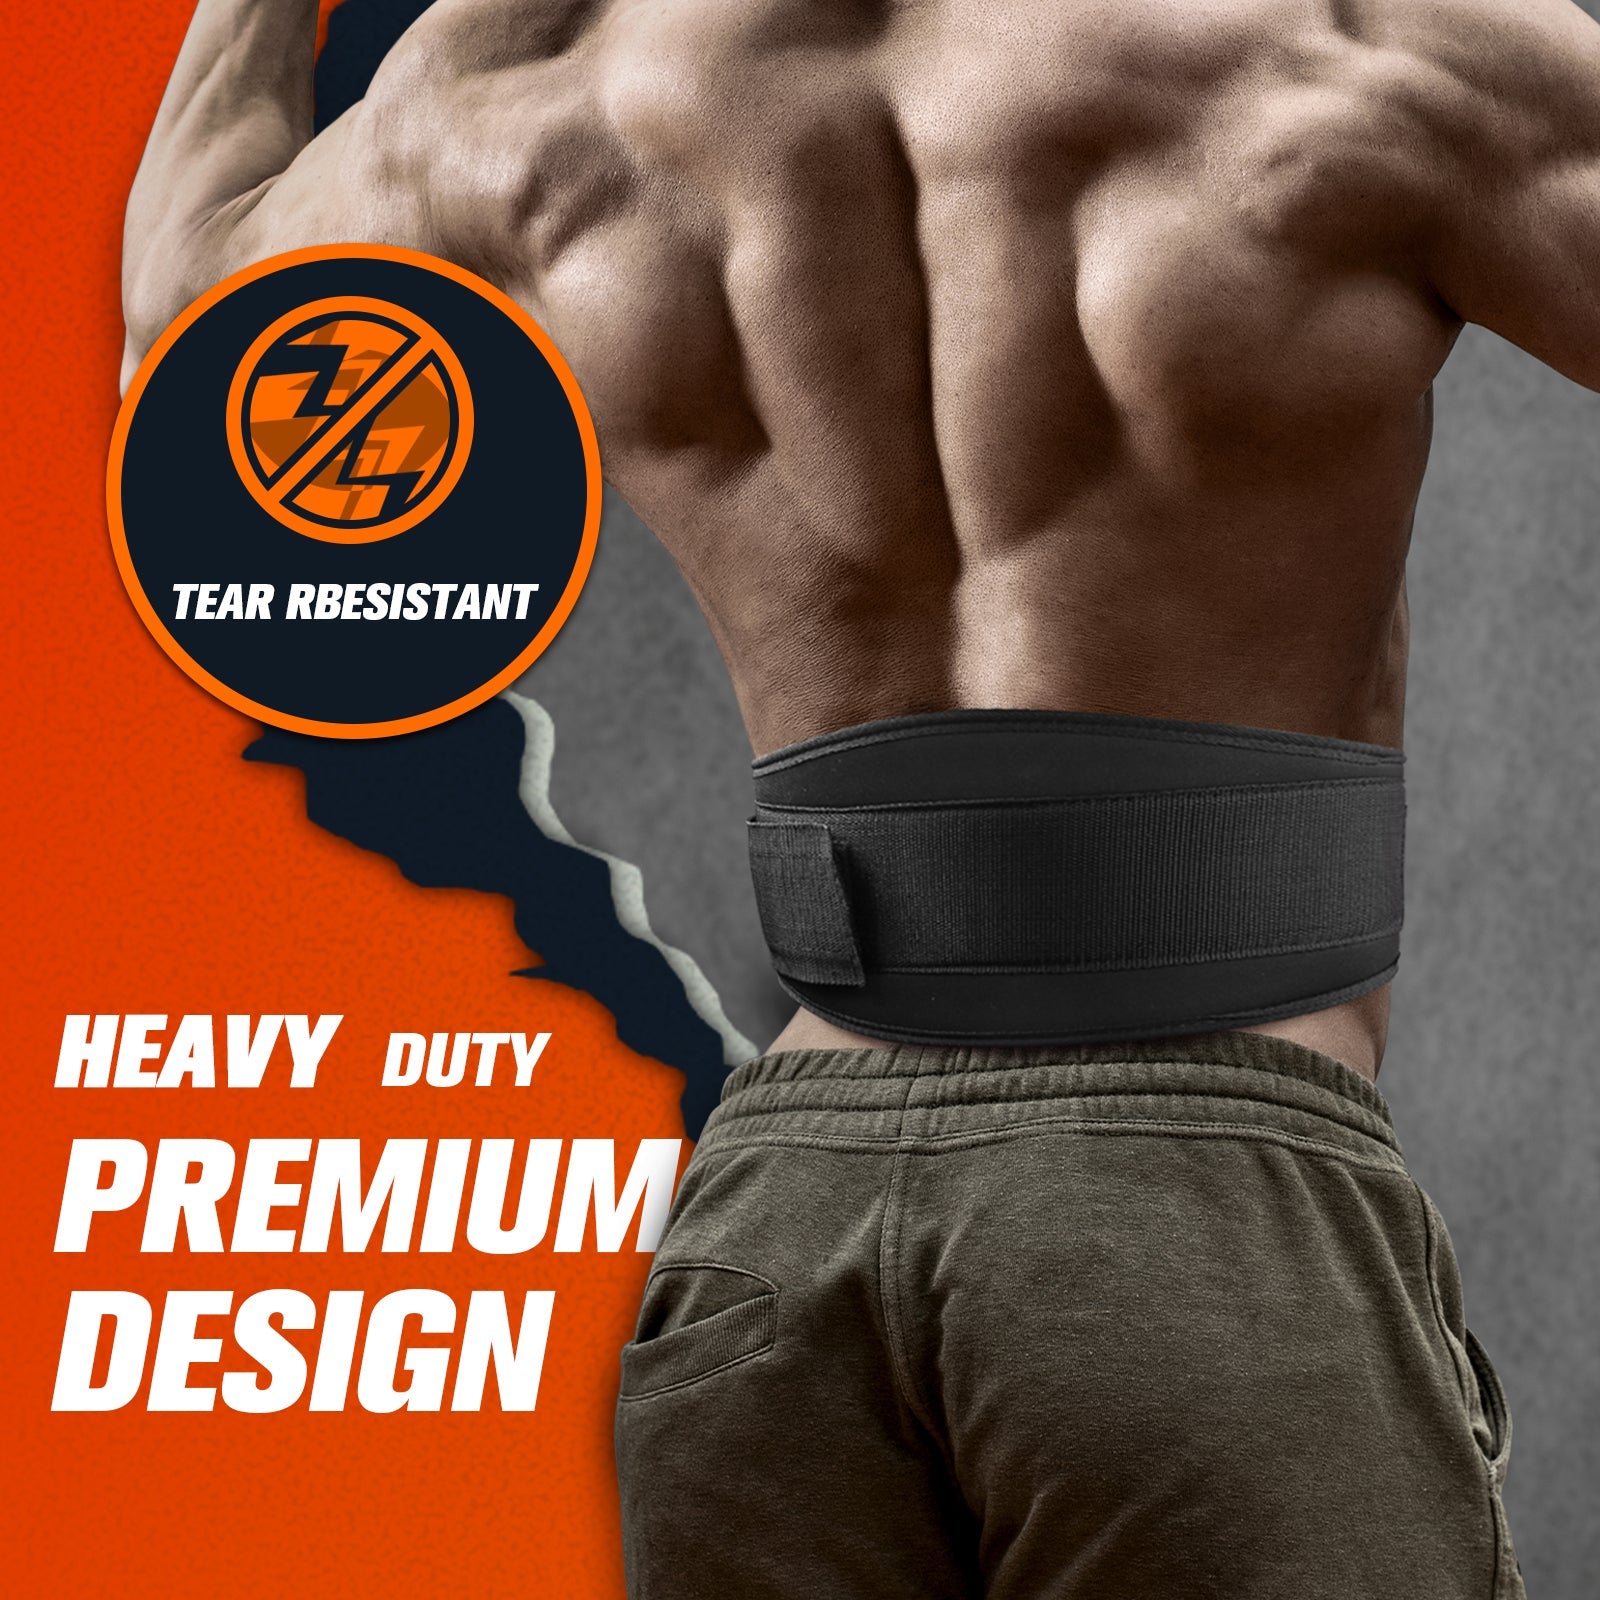 https://www.ritfitsports.com/cdn/shop/products/ritfit-weight-lifting-belt-6-low-profile-workout-belt-accessories-ritfit-324961.jpg?v=1654132796